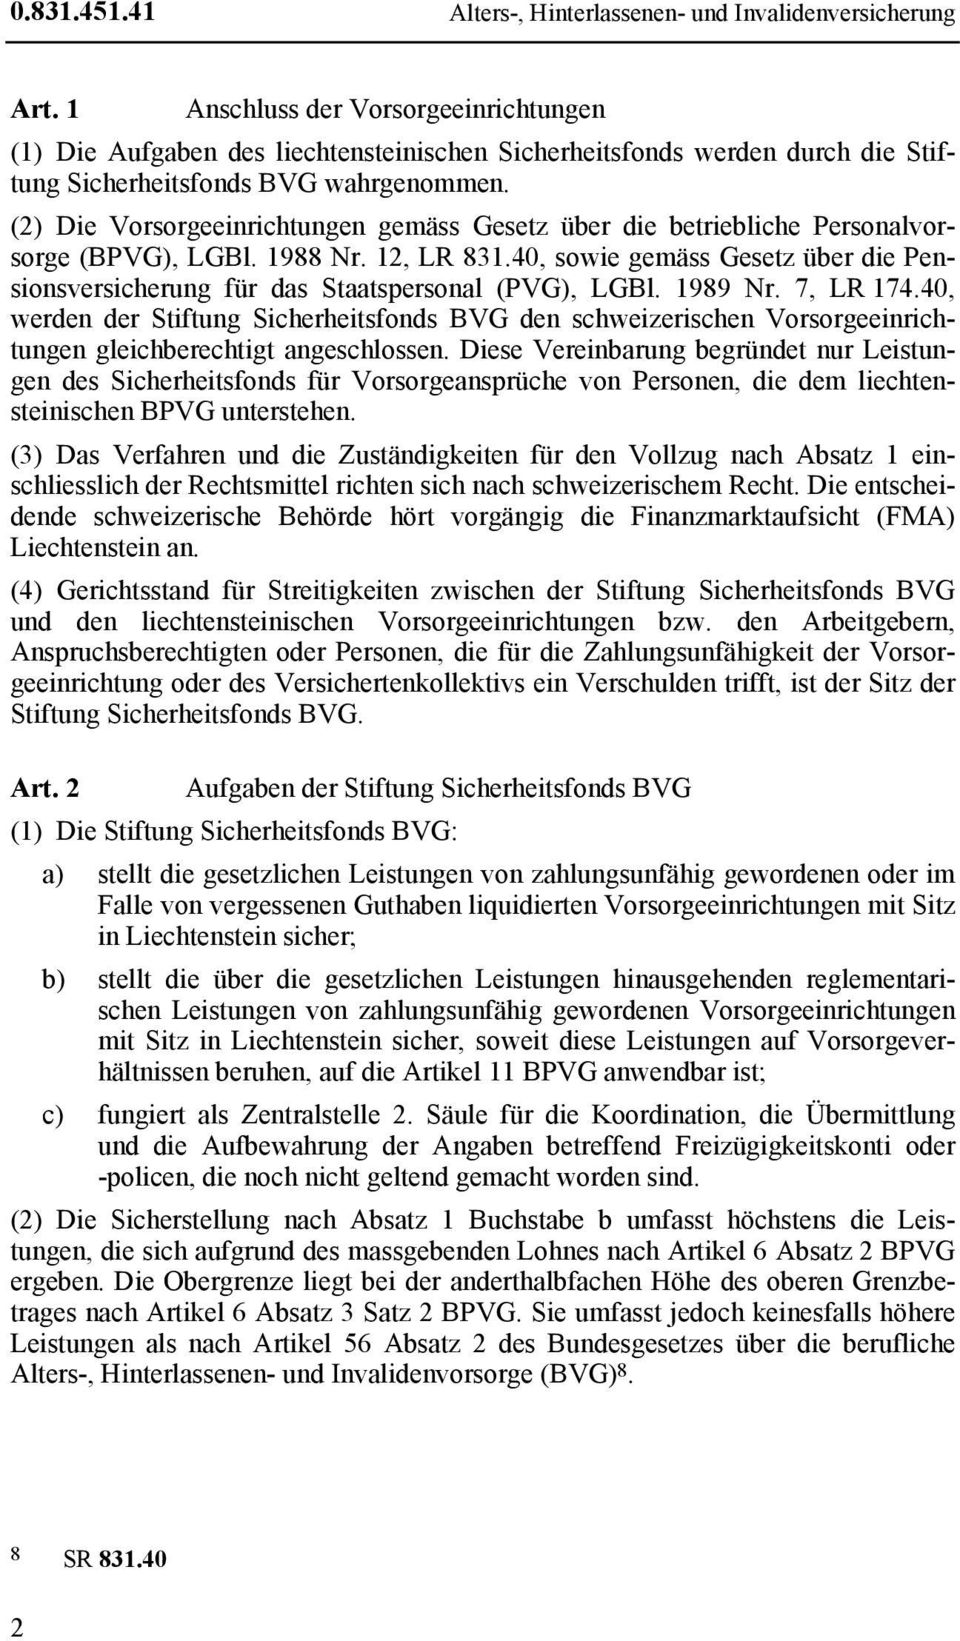 (2) Die Vorsorgeeinrichtungen gemäss Gesetz über die betriebliche Personalvorsorge (BPVG), LGBl. 1988 Nr. 12, LR 831.